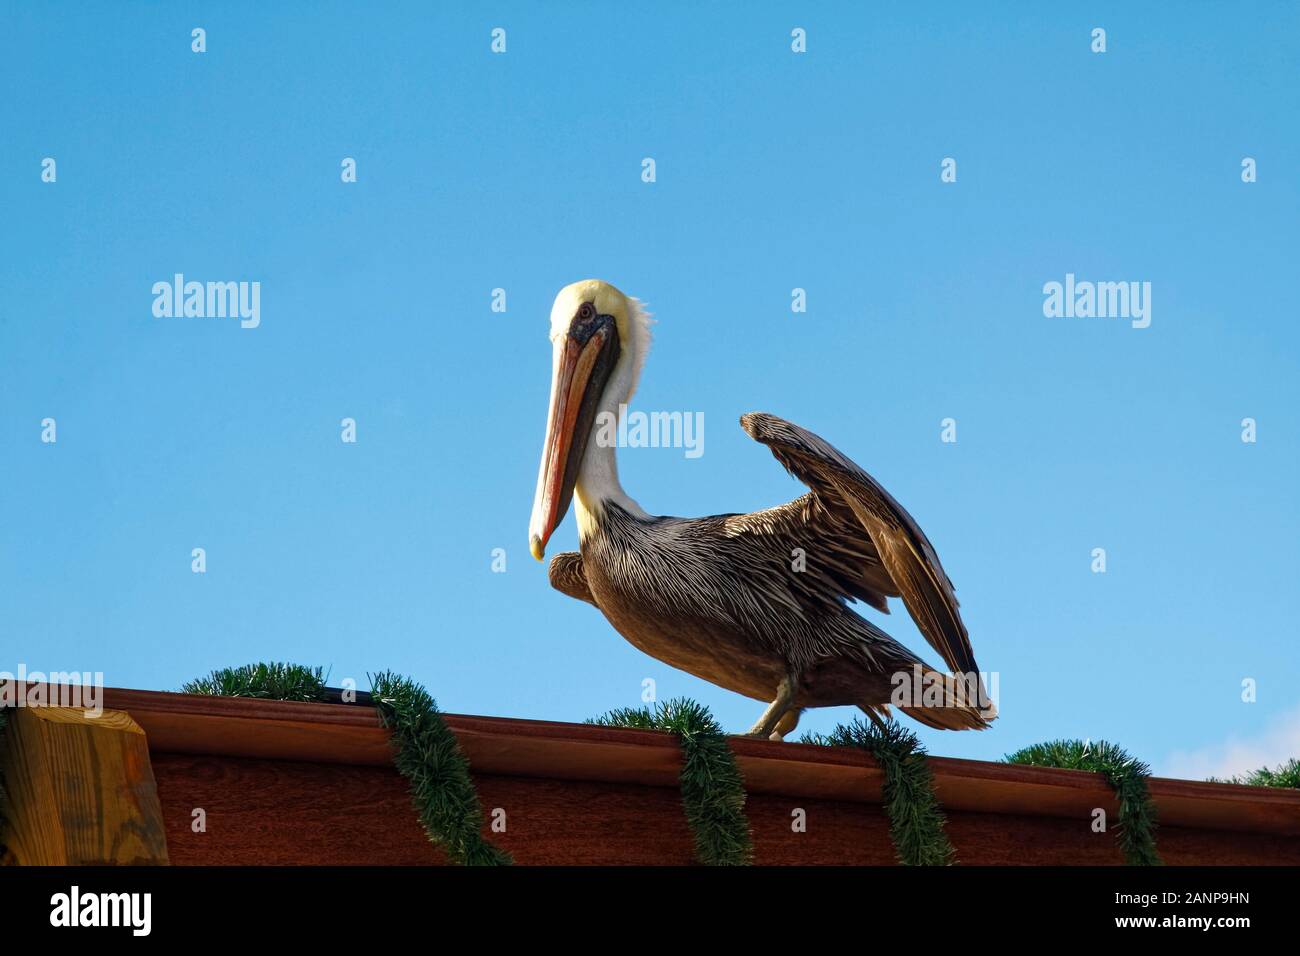 Pelicano café americano, Pelecanus occidentalis, gran pájaro, pico largo, sentado en el muelle la baranda, alas, vida silvestre, animal, decoraciones de Navidad, ora Foto de stock